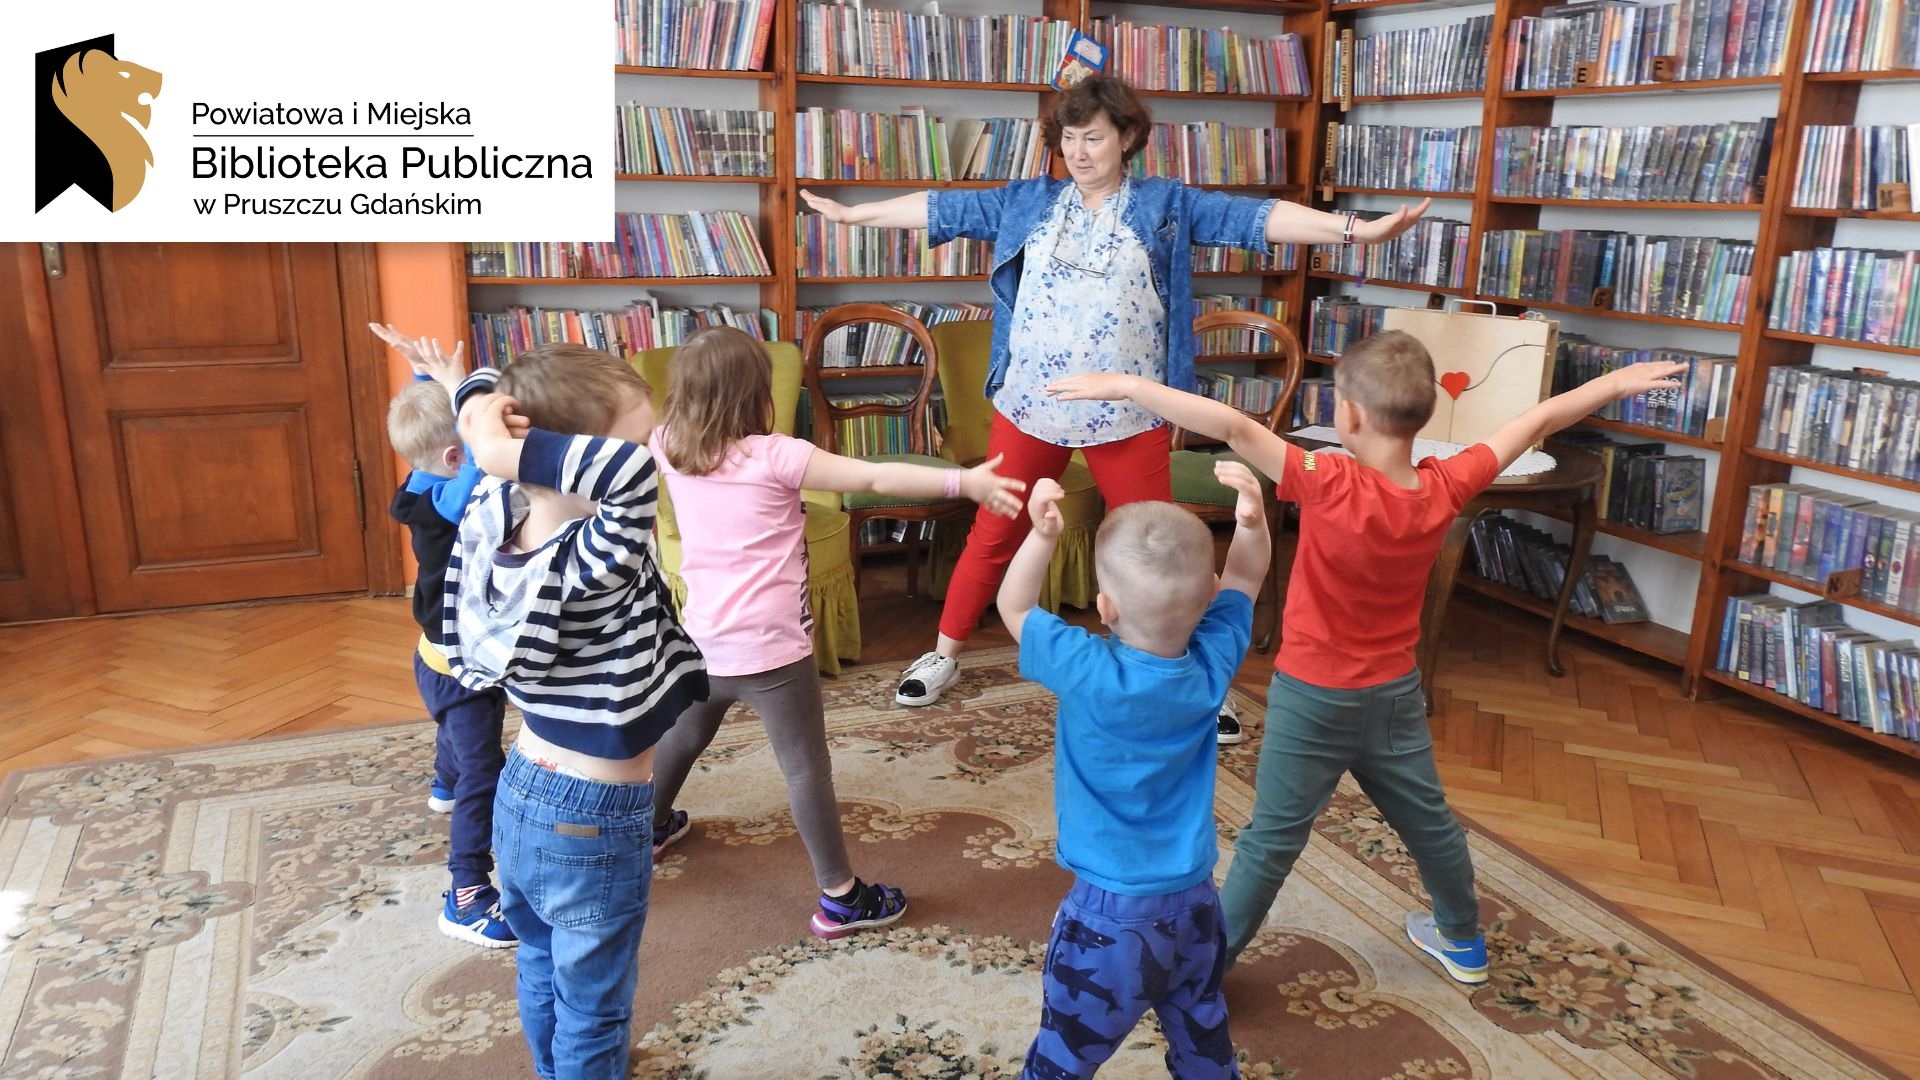 Kilkoro dzieci stoi naprzeciwko osoby dorosłej. Wszyscy mają szeroko rozłożone ręce. W tle regały z książkami.Logotyp oraz napis: Powiatowa i Miejska Biblioteka Publiczna w Pruszczu Gdańskim.